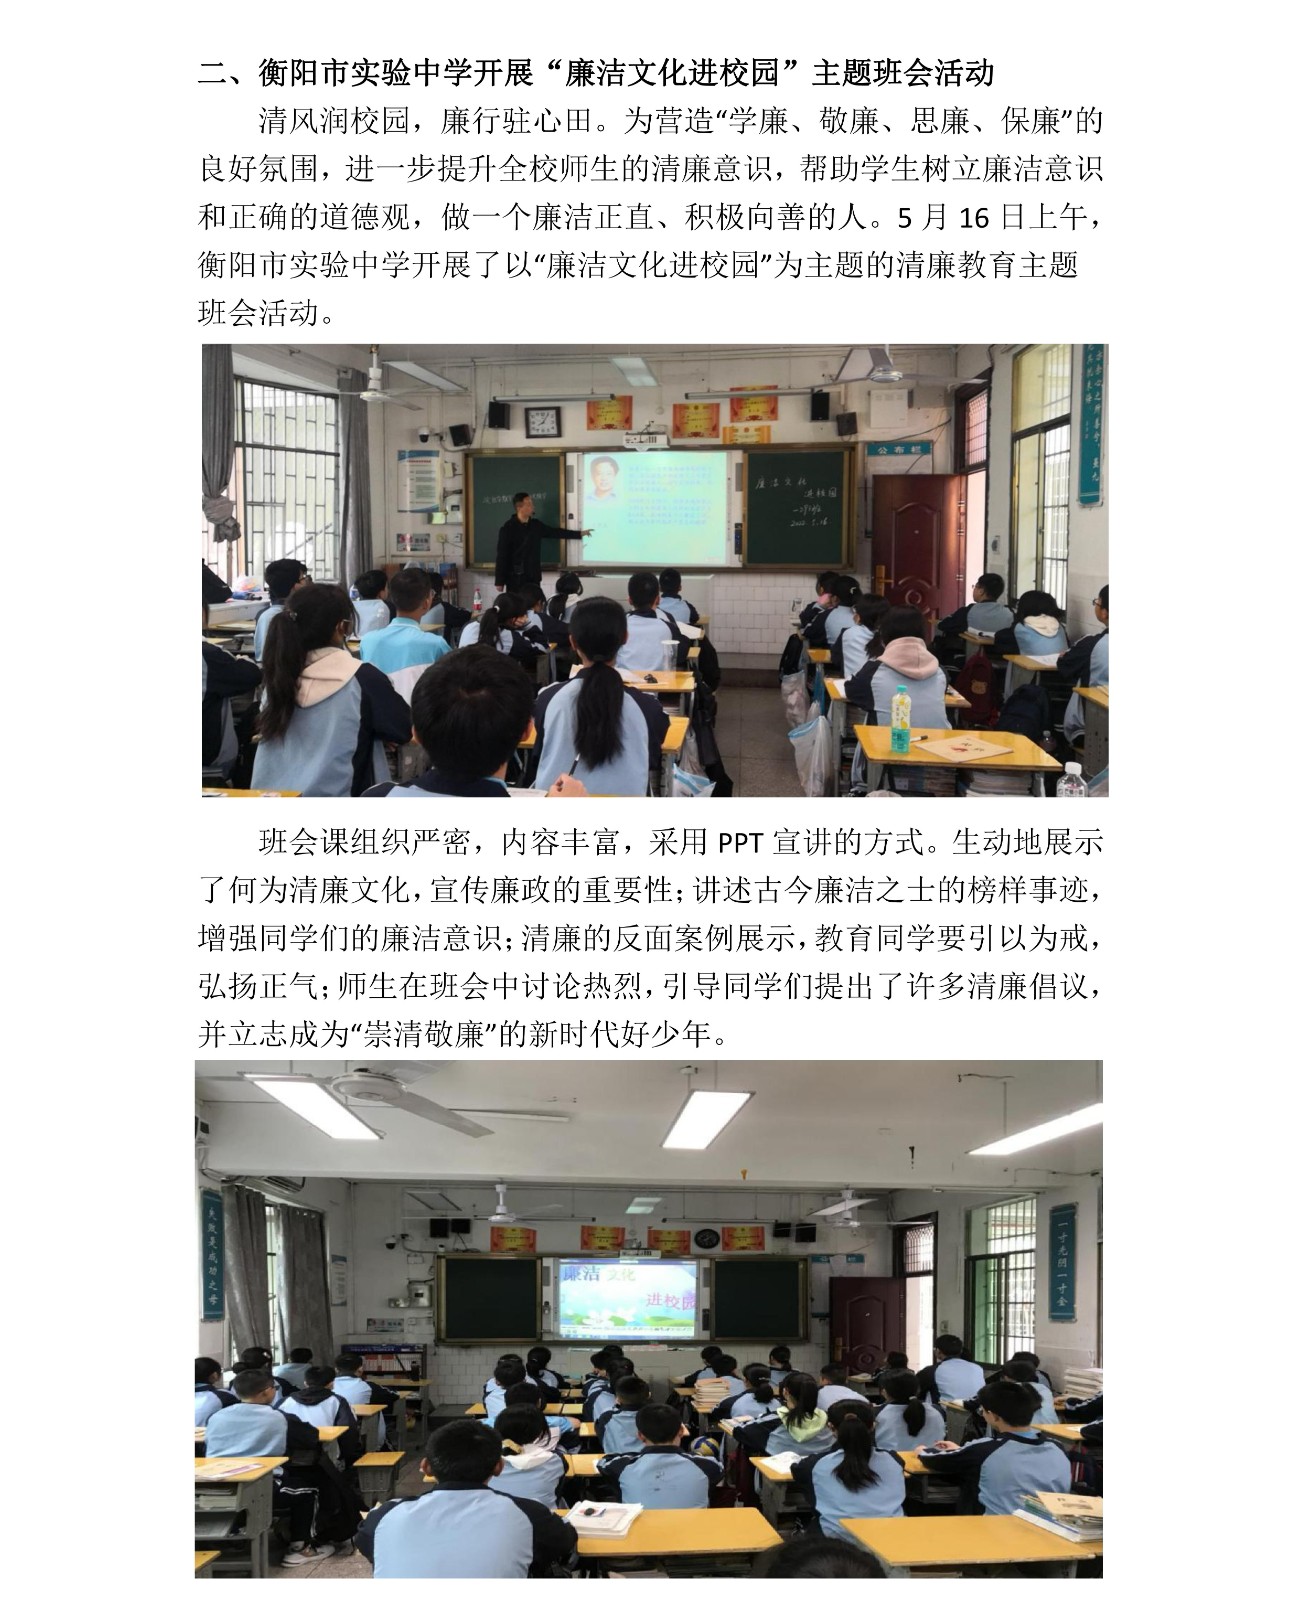 188金宝清廉学校建设第3期简报_04.jpg